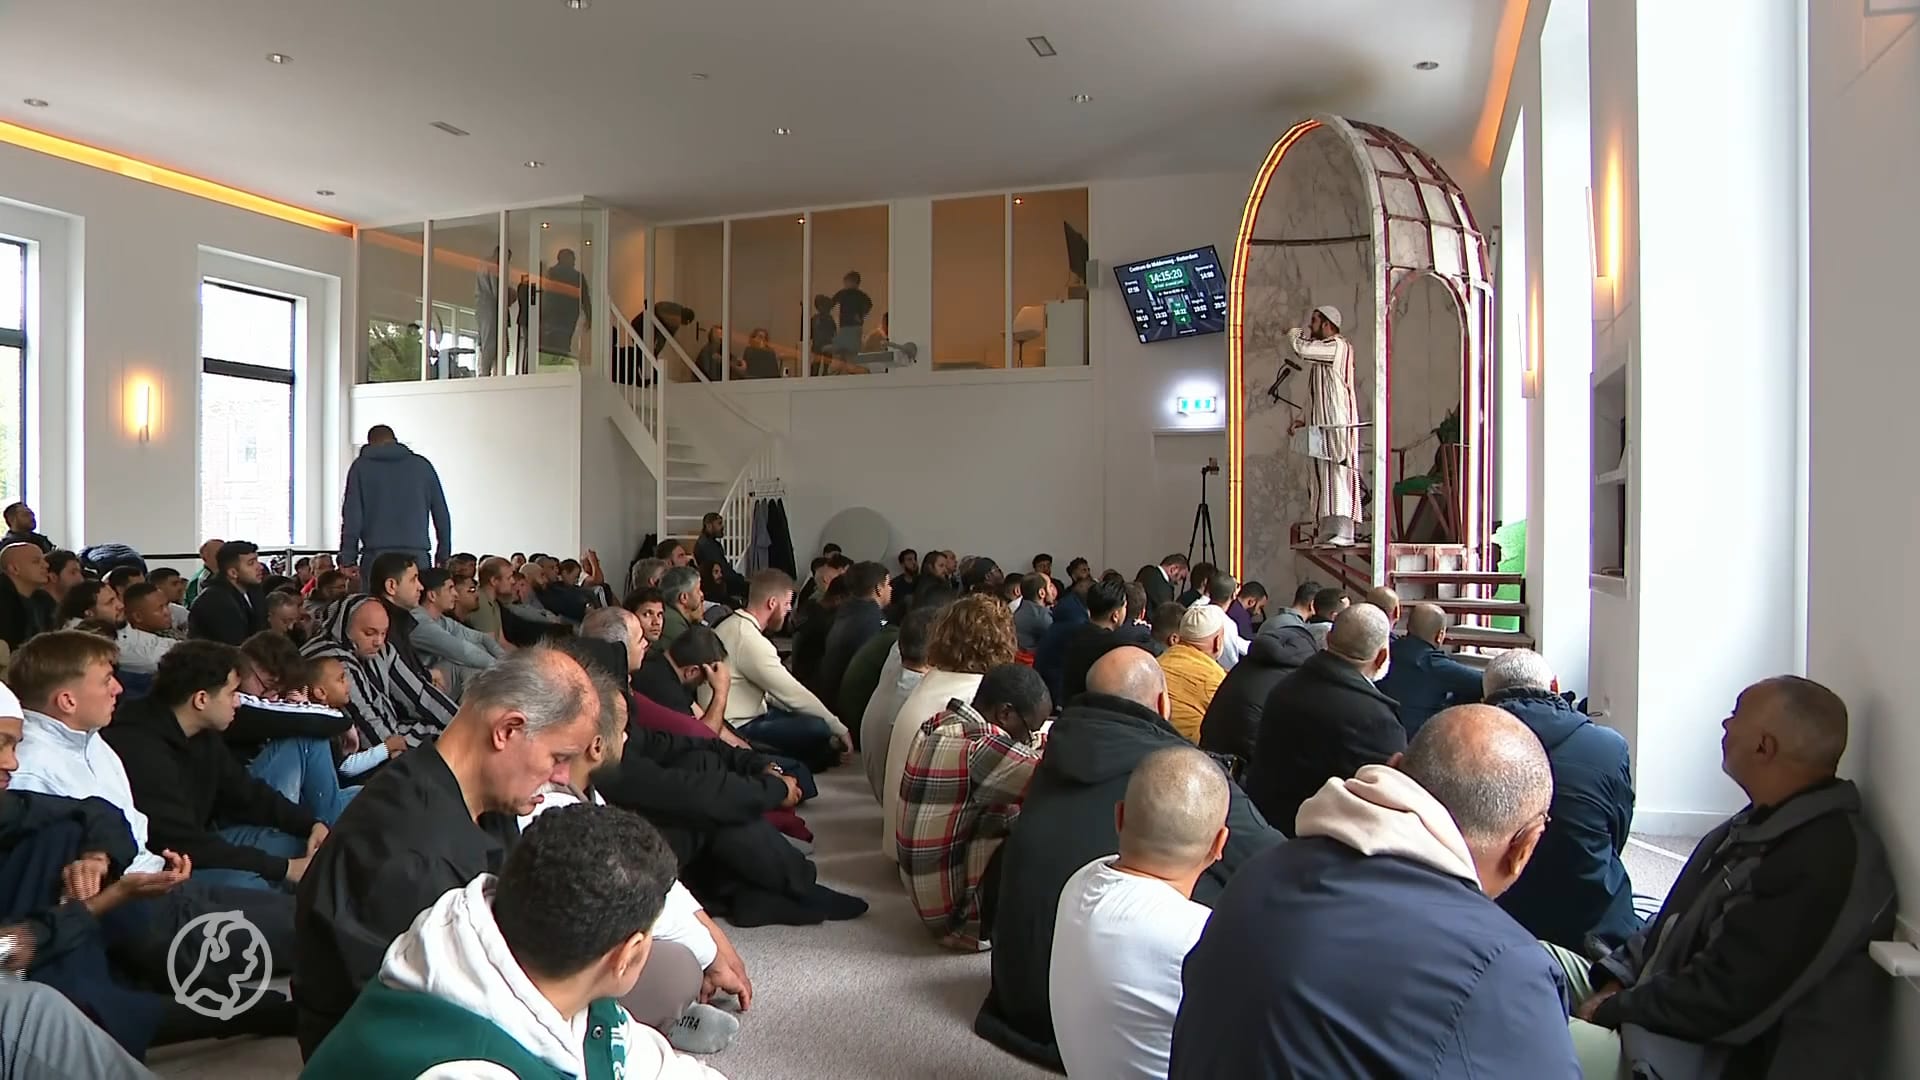 Rotterdamse moskee staat tijdens vrijdaggebed stil bij Gaza–Israël conflict